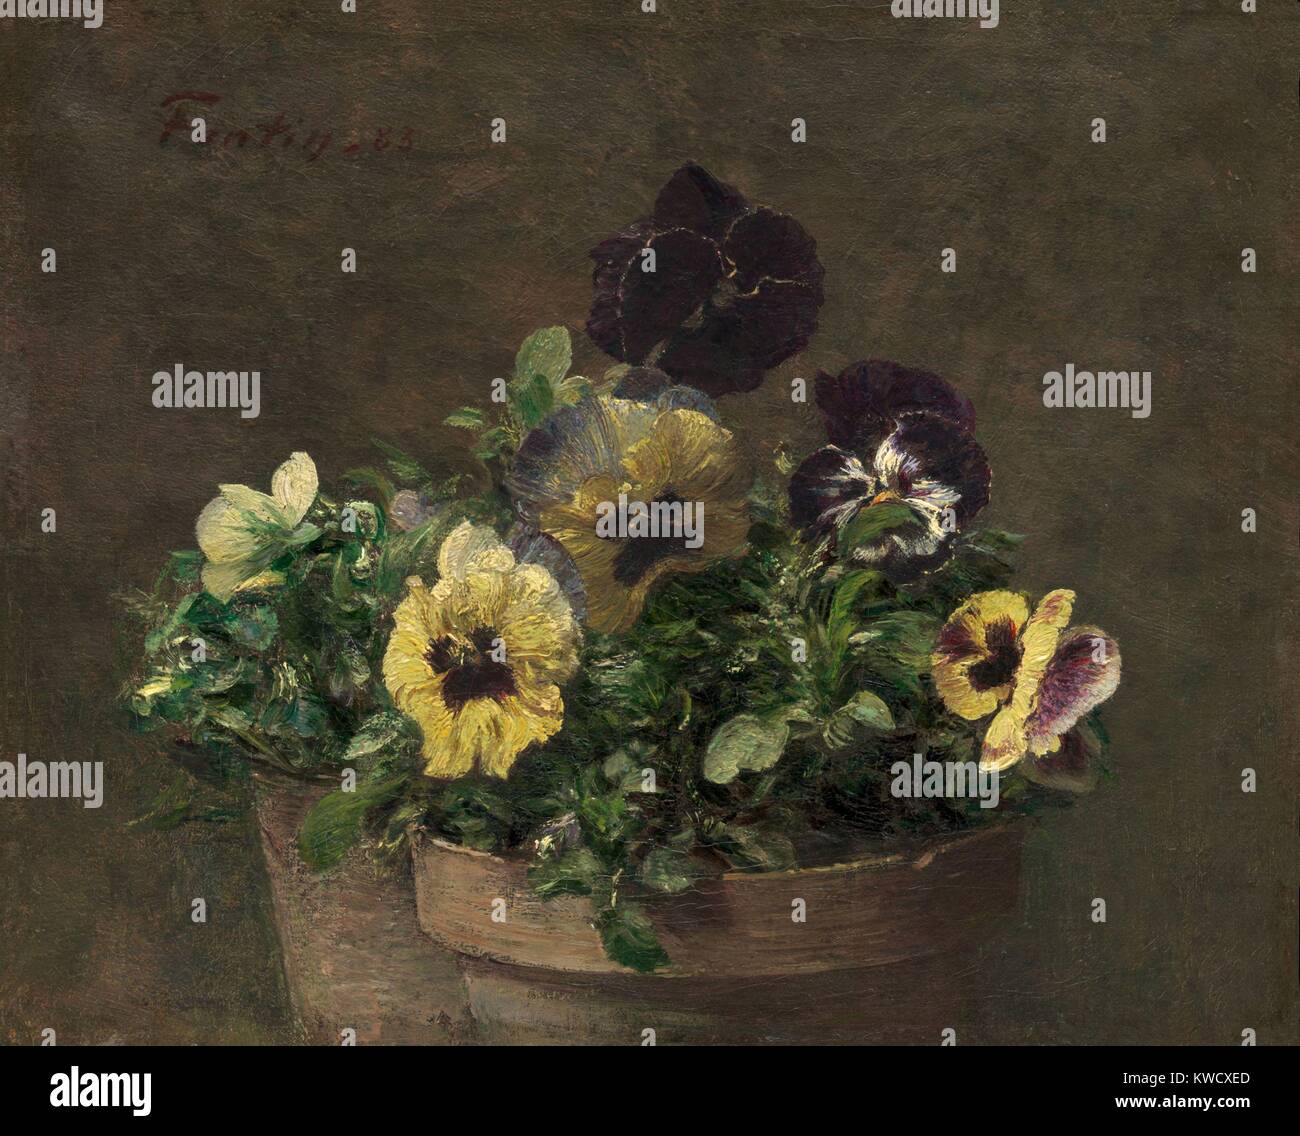 Pensées en pot, par Henri Fantin-Latour, 1883, la peinture impressionniste français, huile sur toile. C'est une petite peinture, mesure seulement 11 x 13 1/2 pouces (BSLOC 2017 3 152) Banque D'Images